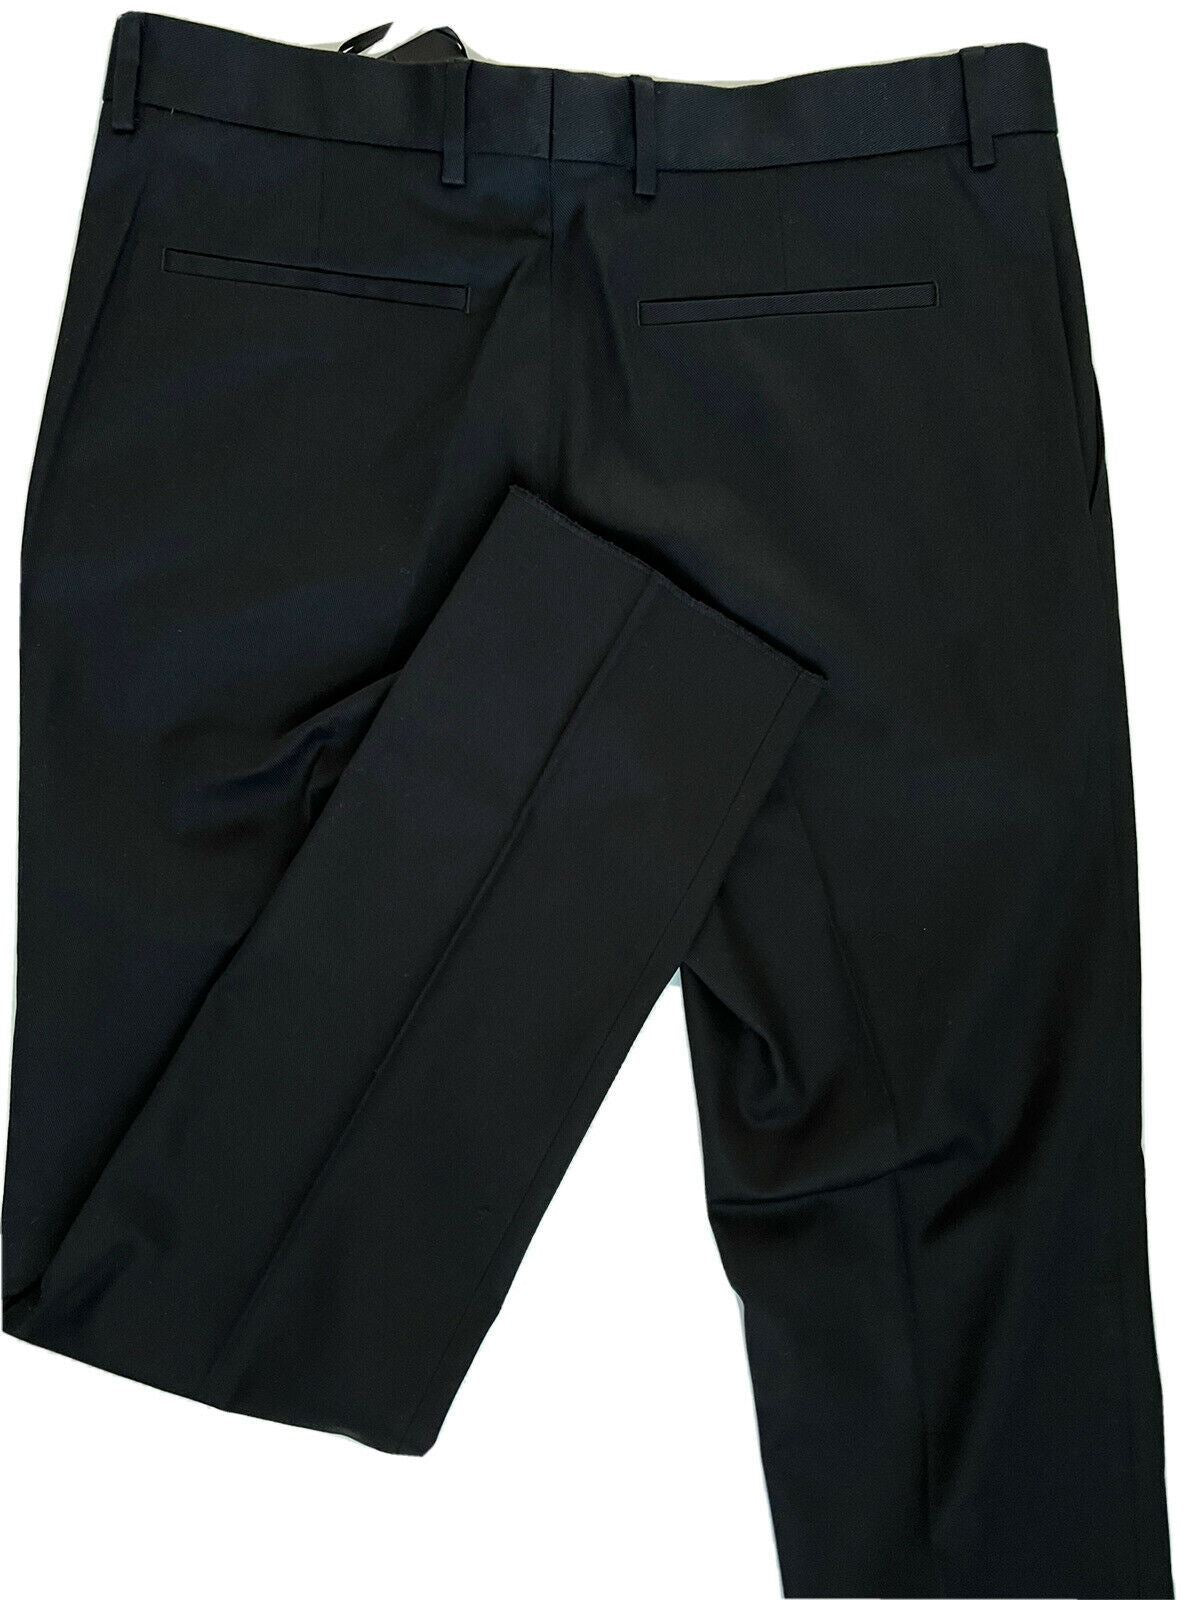 Мужские черные брюки Versace NWT 550 долларов США (52 евро), производство Италия A79901